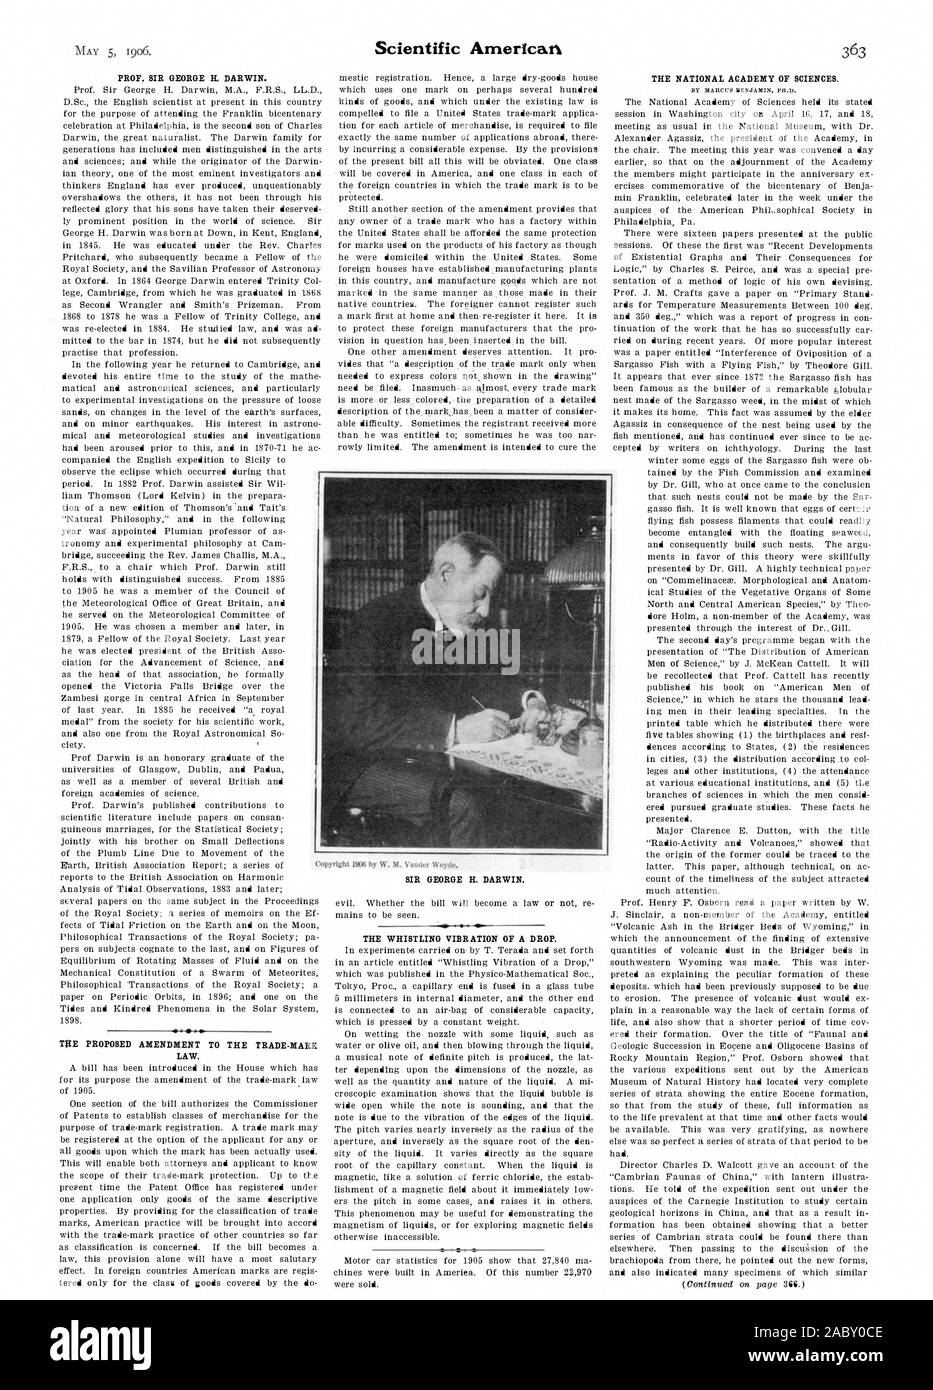 Il prof. SIR GEORGE IL DARWIN. Diritto. Il sibilo della vibrazione di una goccia., Scientific American, 1906-05-05 Foto Stock